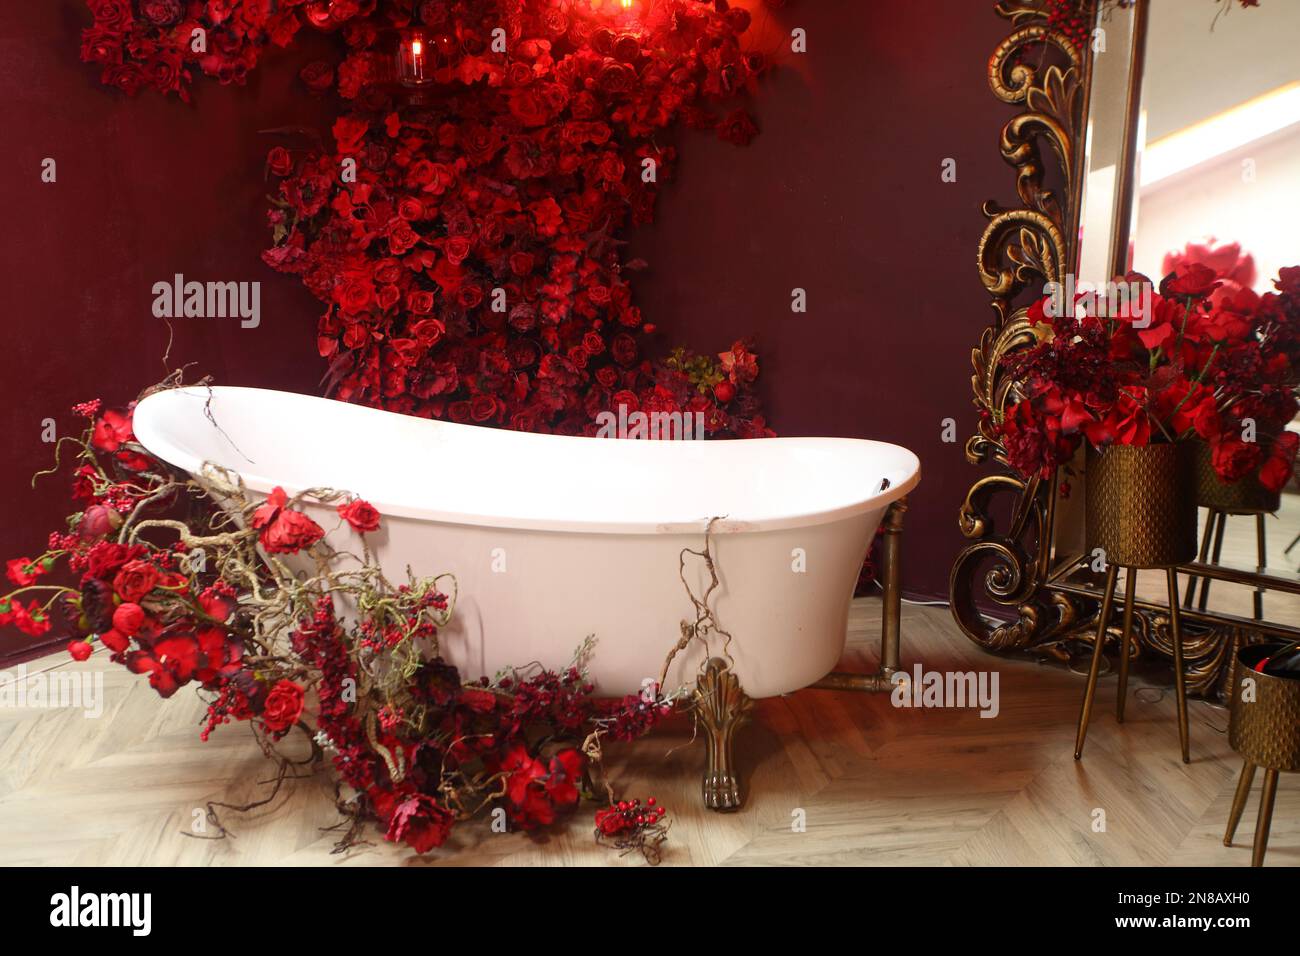 Decorazioni romantiche con vasca e fiori vintage Foto Stock